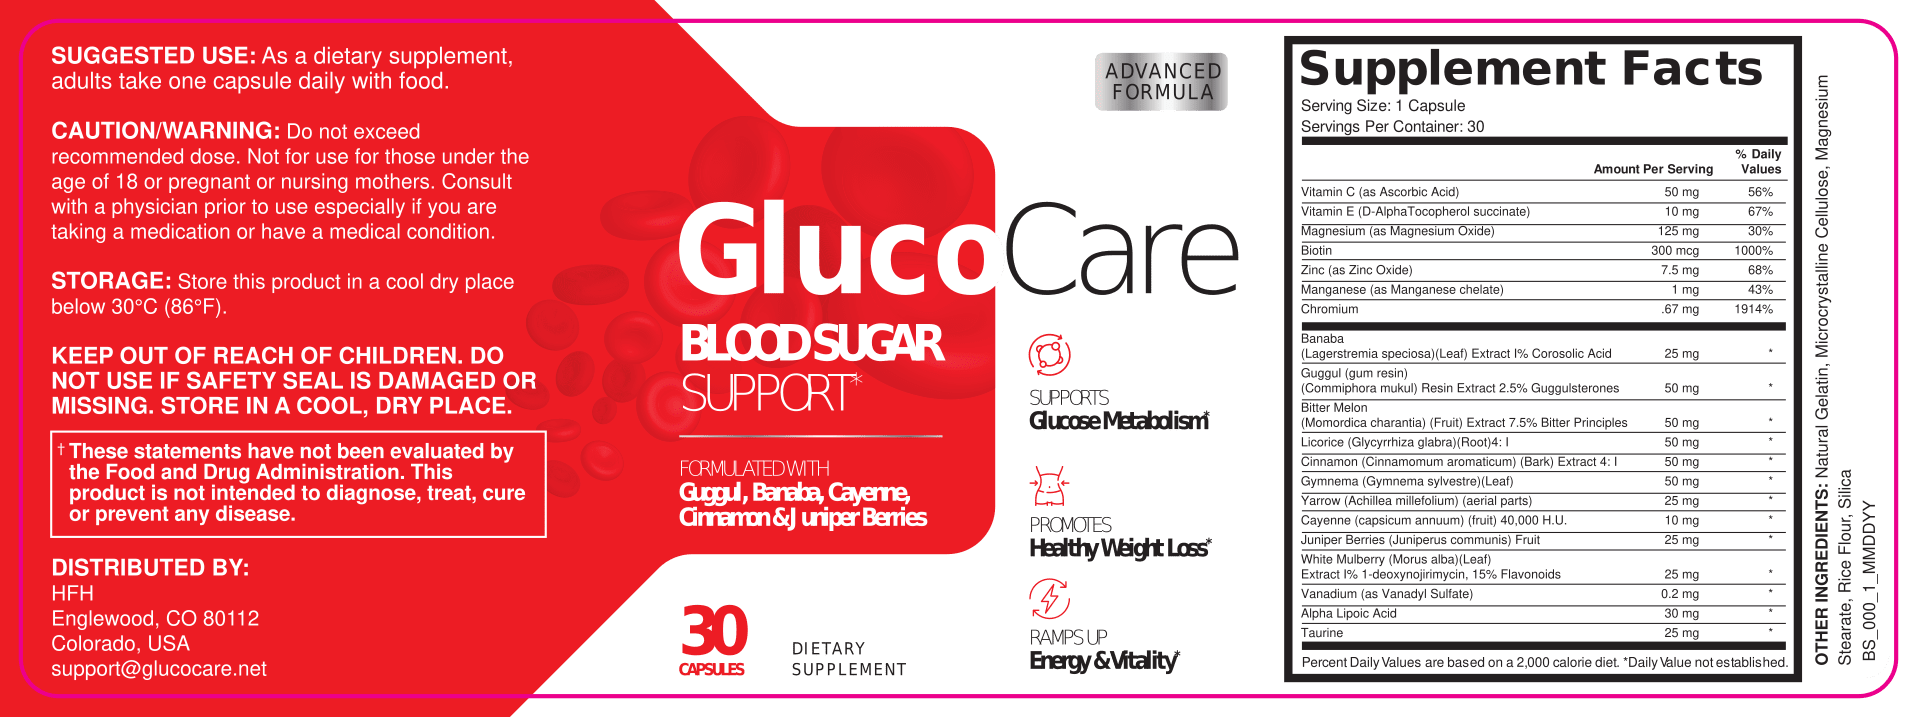 Gluco Care Reviews 